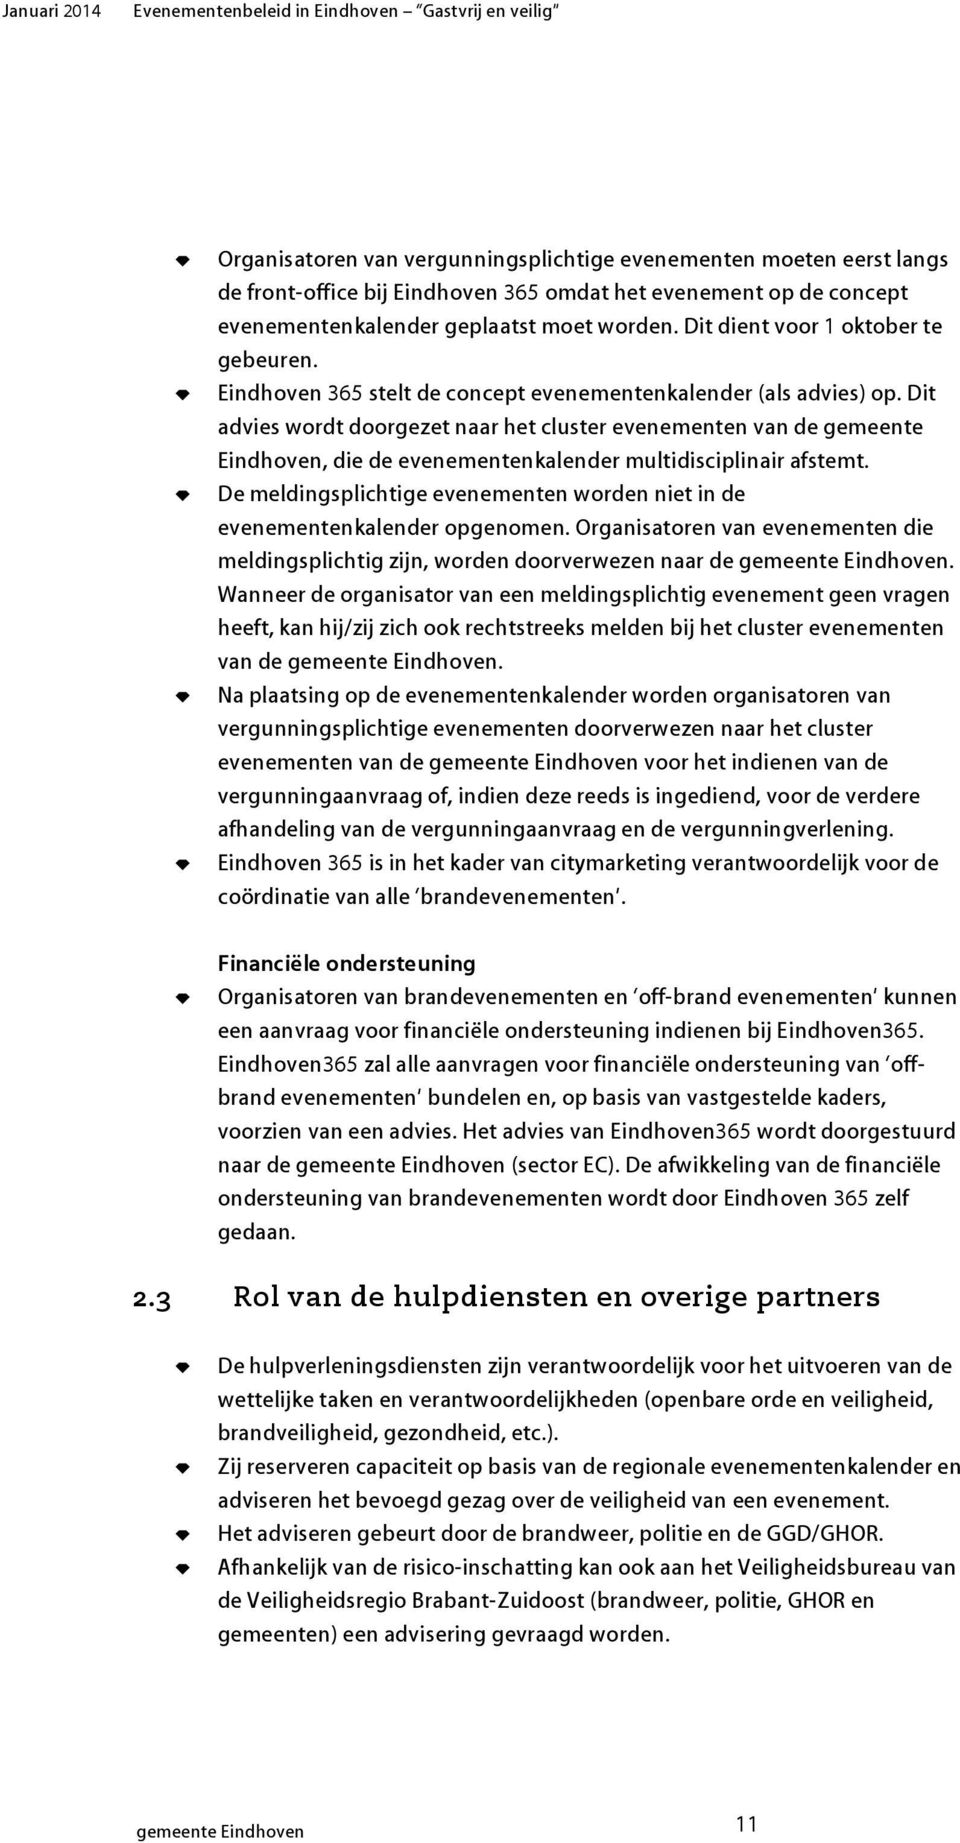 Dit advies wordt doorgezet naar het cluster evenementen van de gemeente Eindhoven, die de evenementenkalender multidisciplinair afstemt.